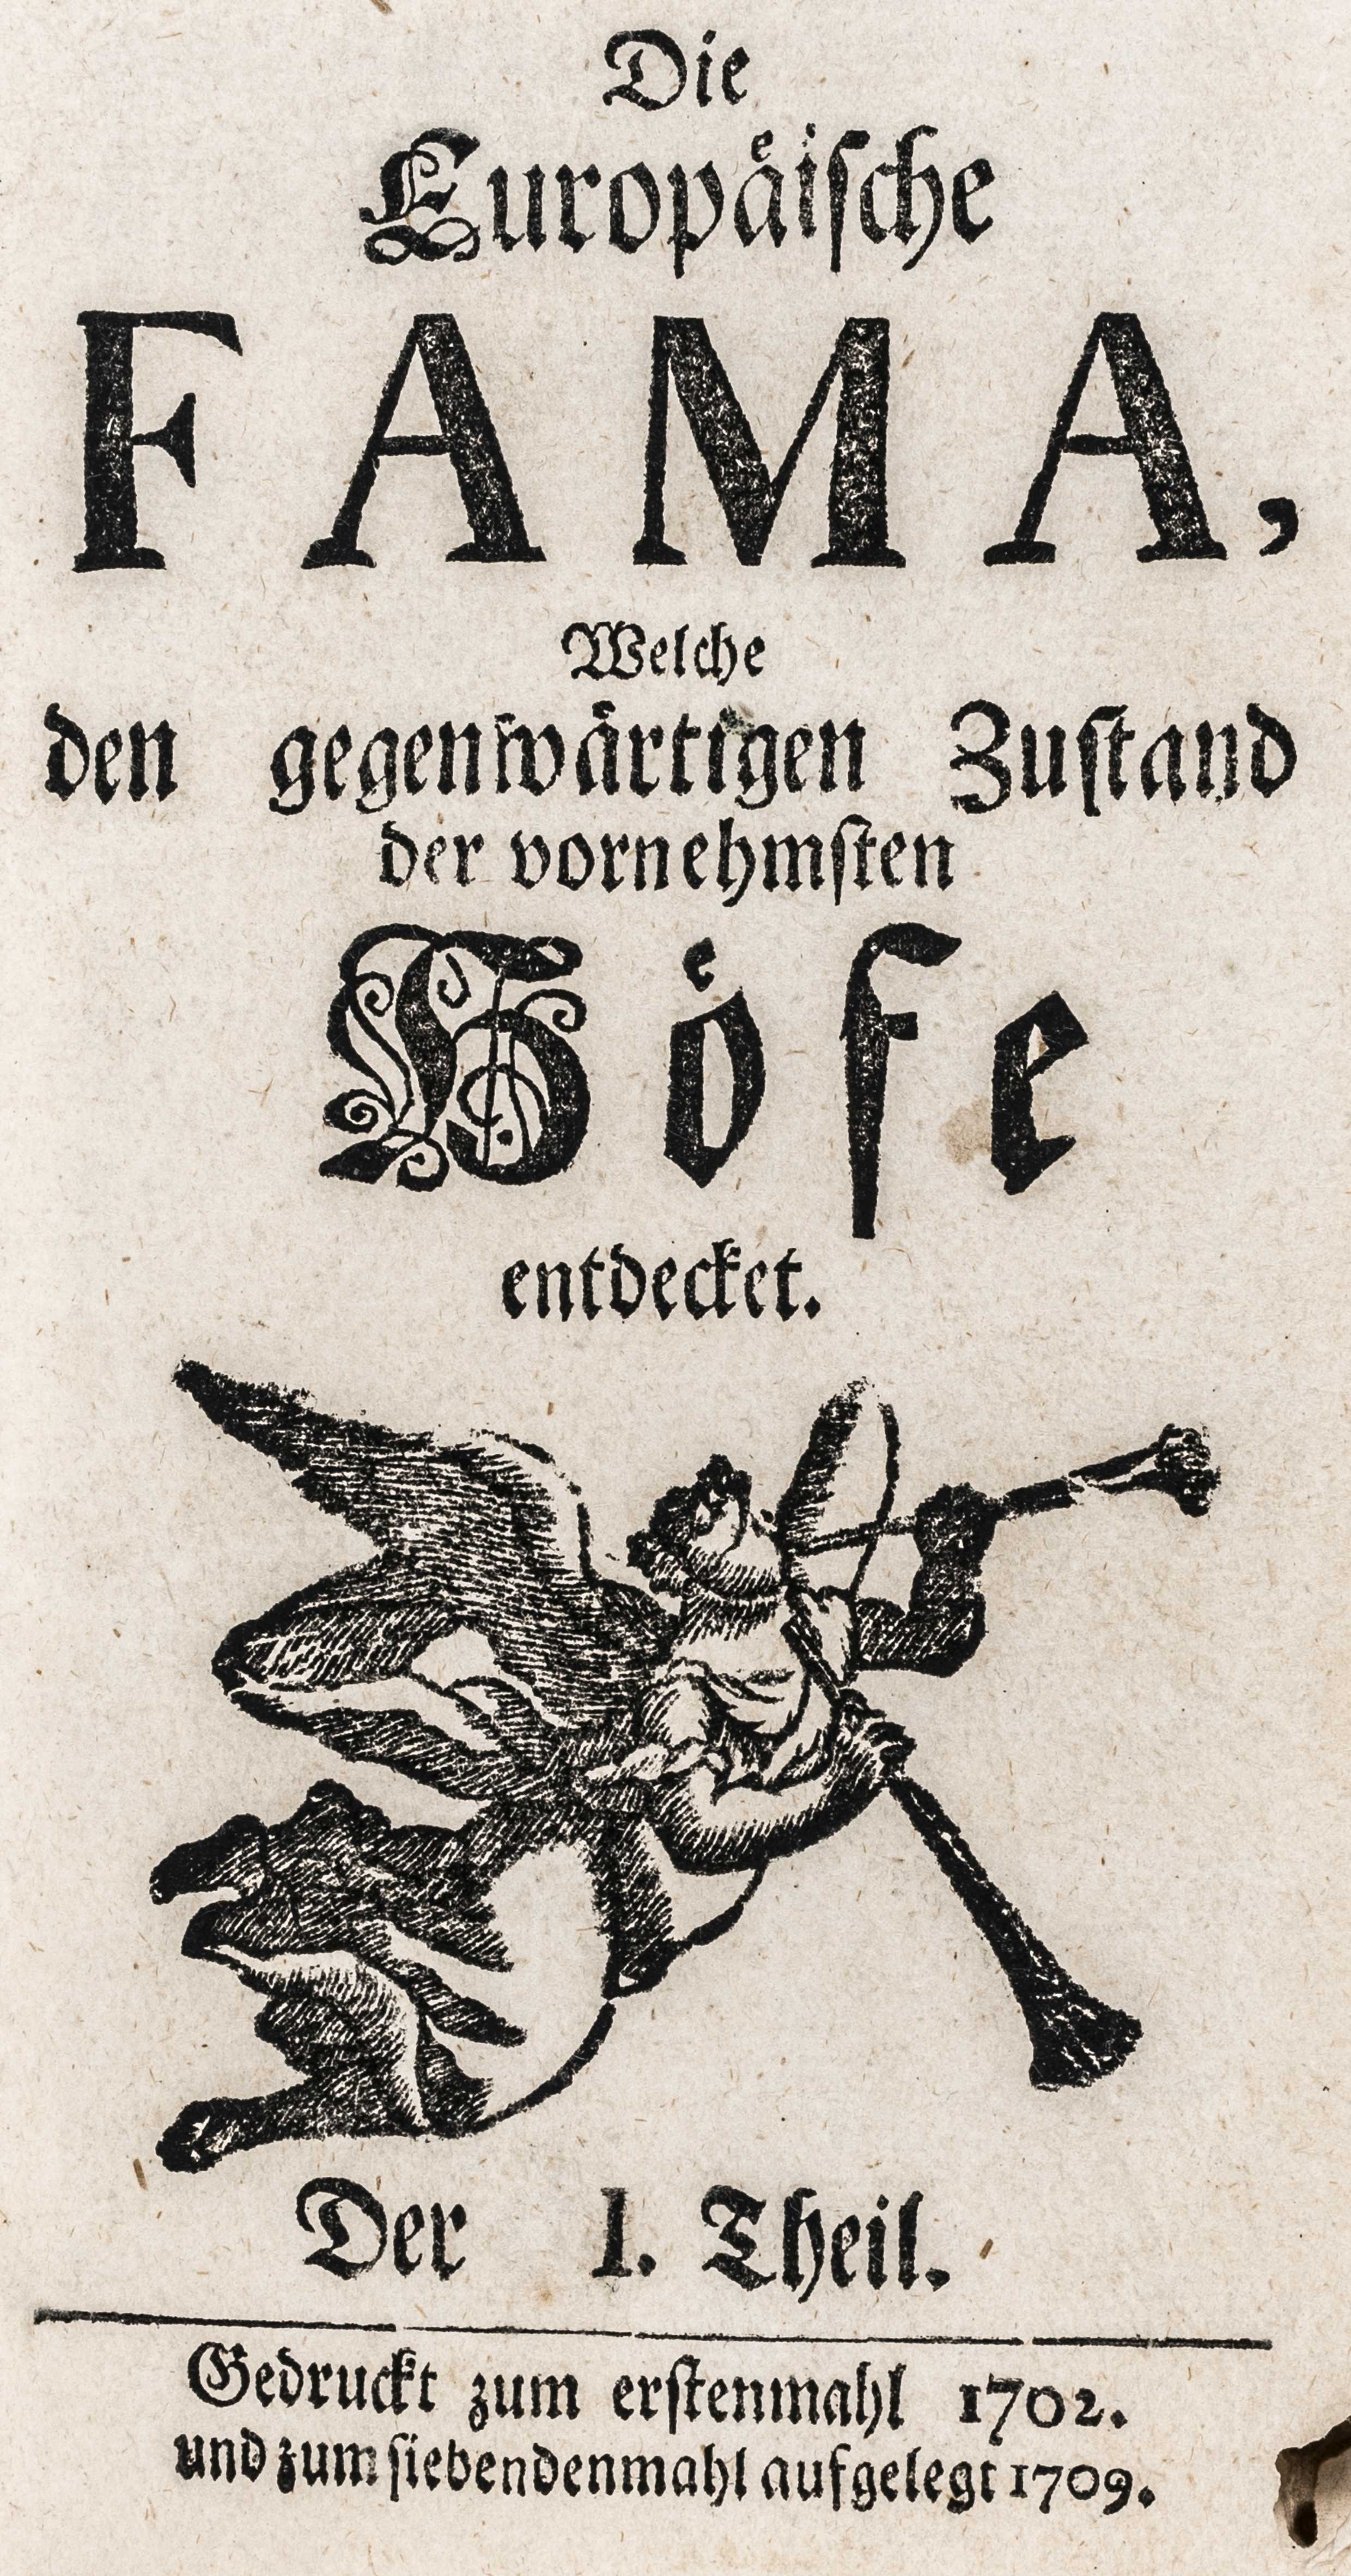 Sinold, Philipp Balthasar, gen. von - Image 3 of 4